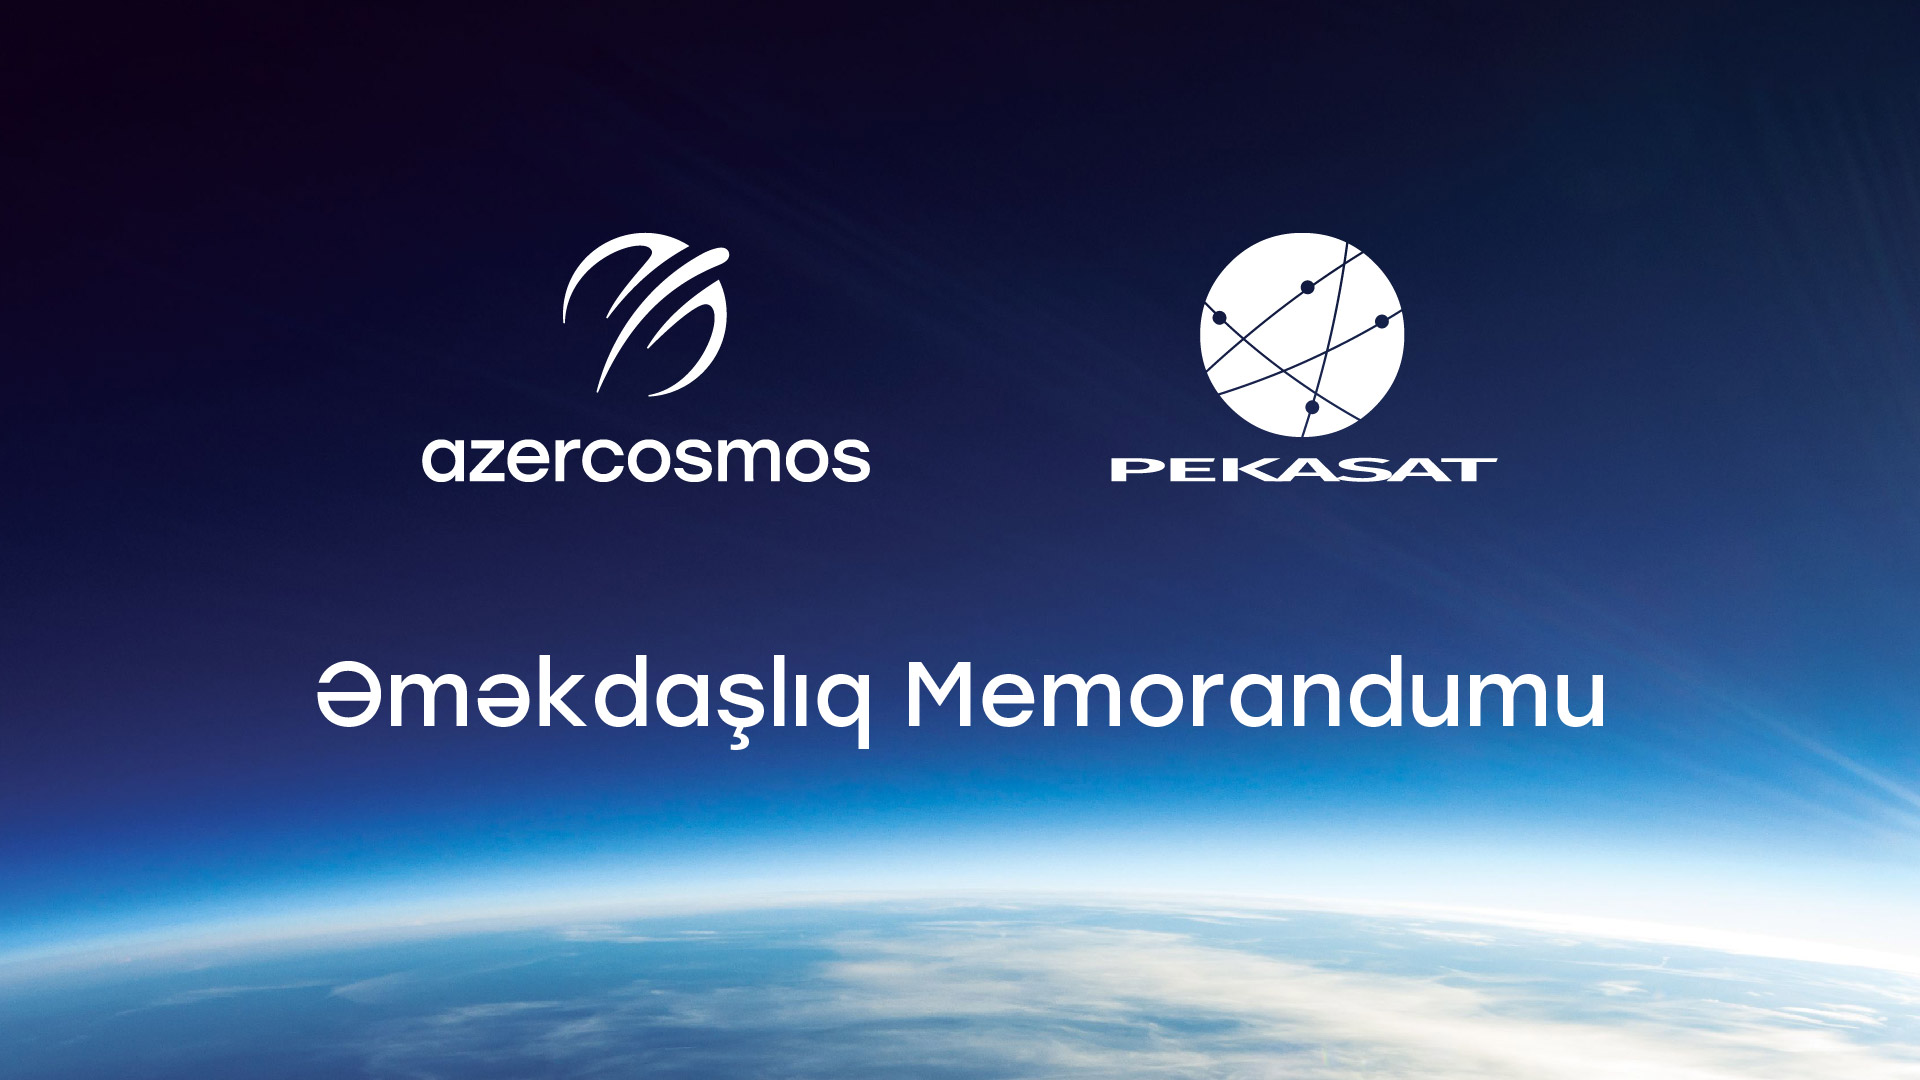 ОАО "Азеркосмос" и чешская компания подписали меморандум о сотрудничестве